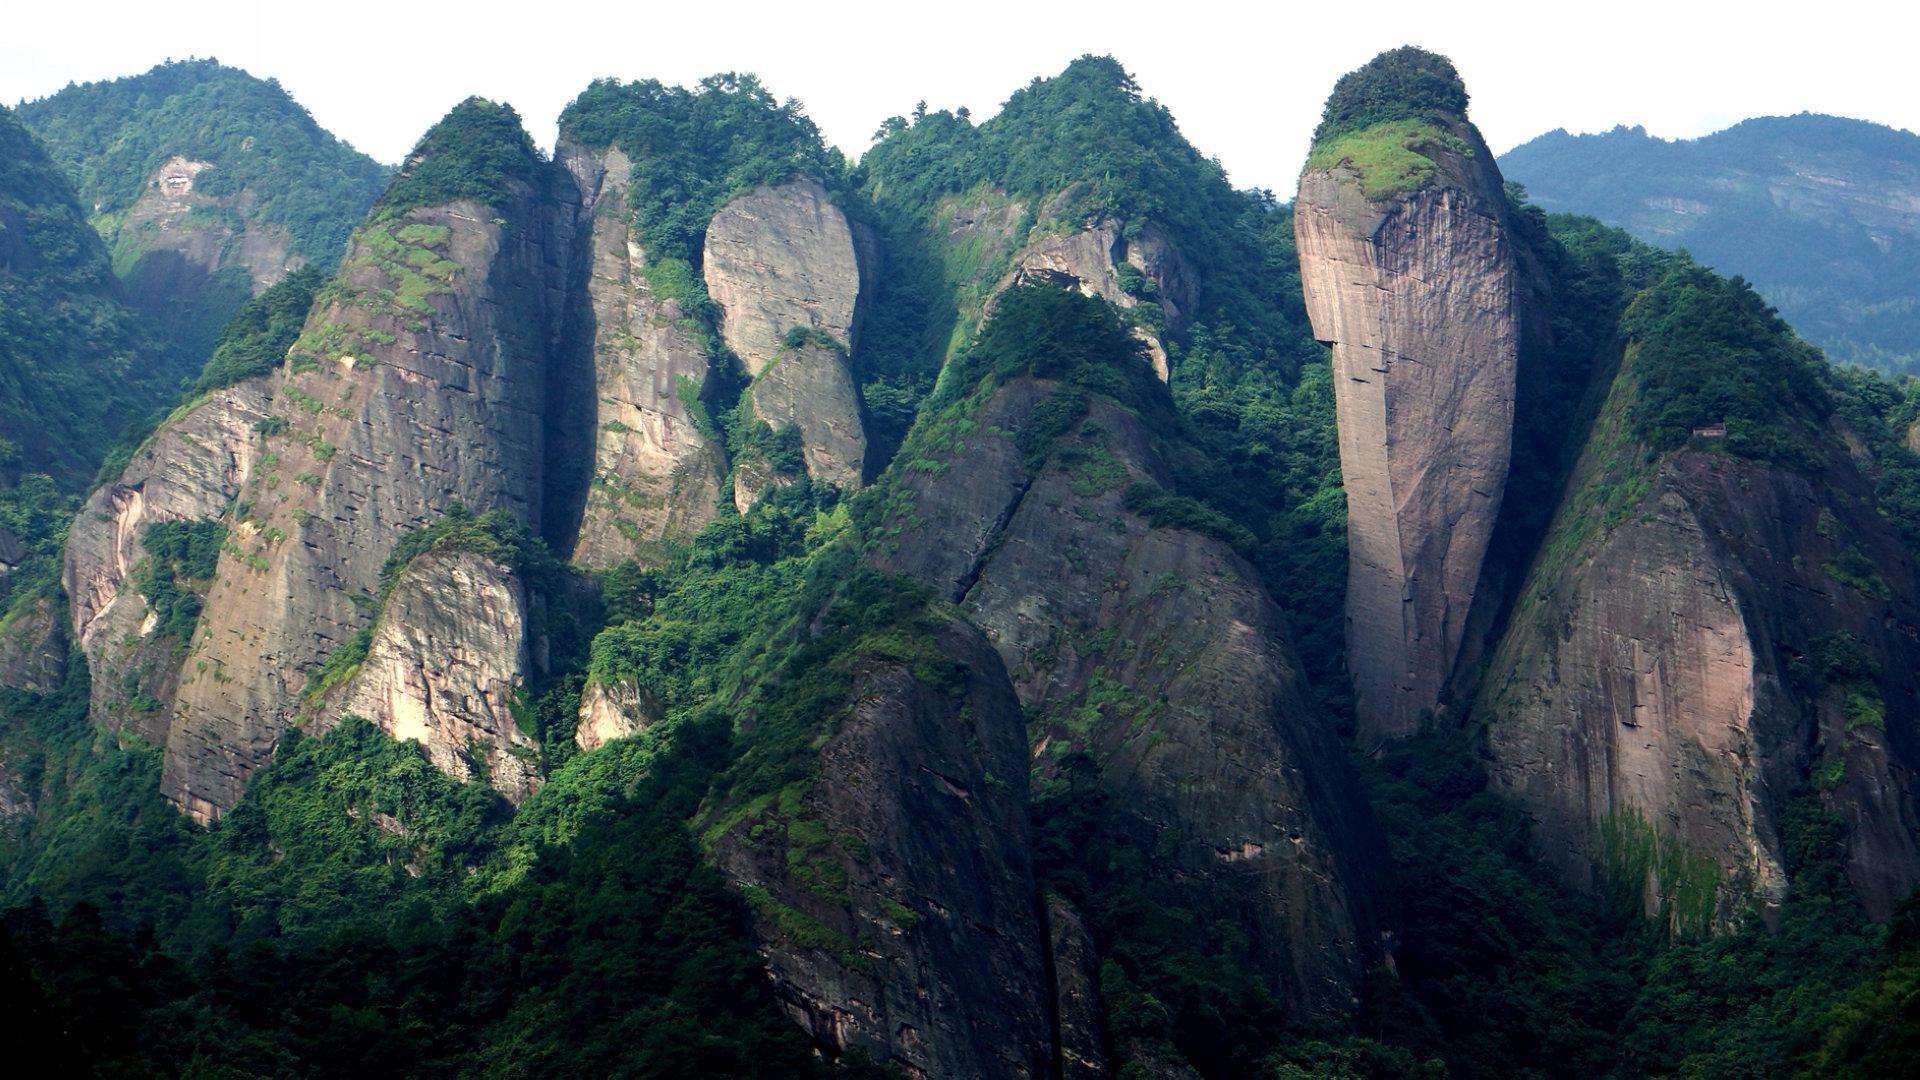 辣椒峰辣椒峰以其独特的地貌位居崀山六绝之一,形状如一根巨大的辣椒